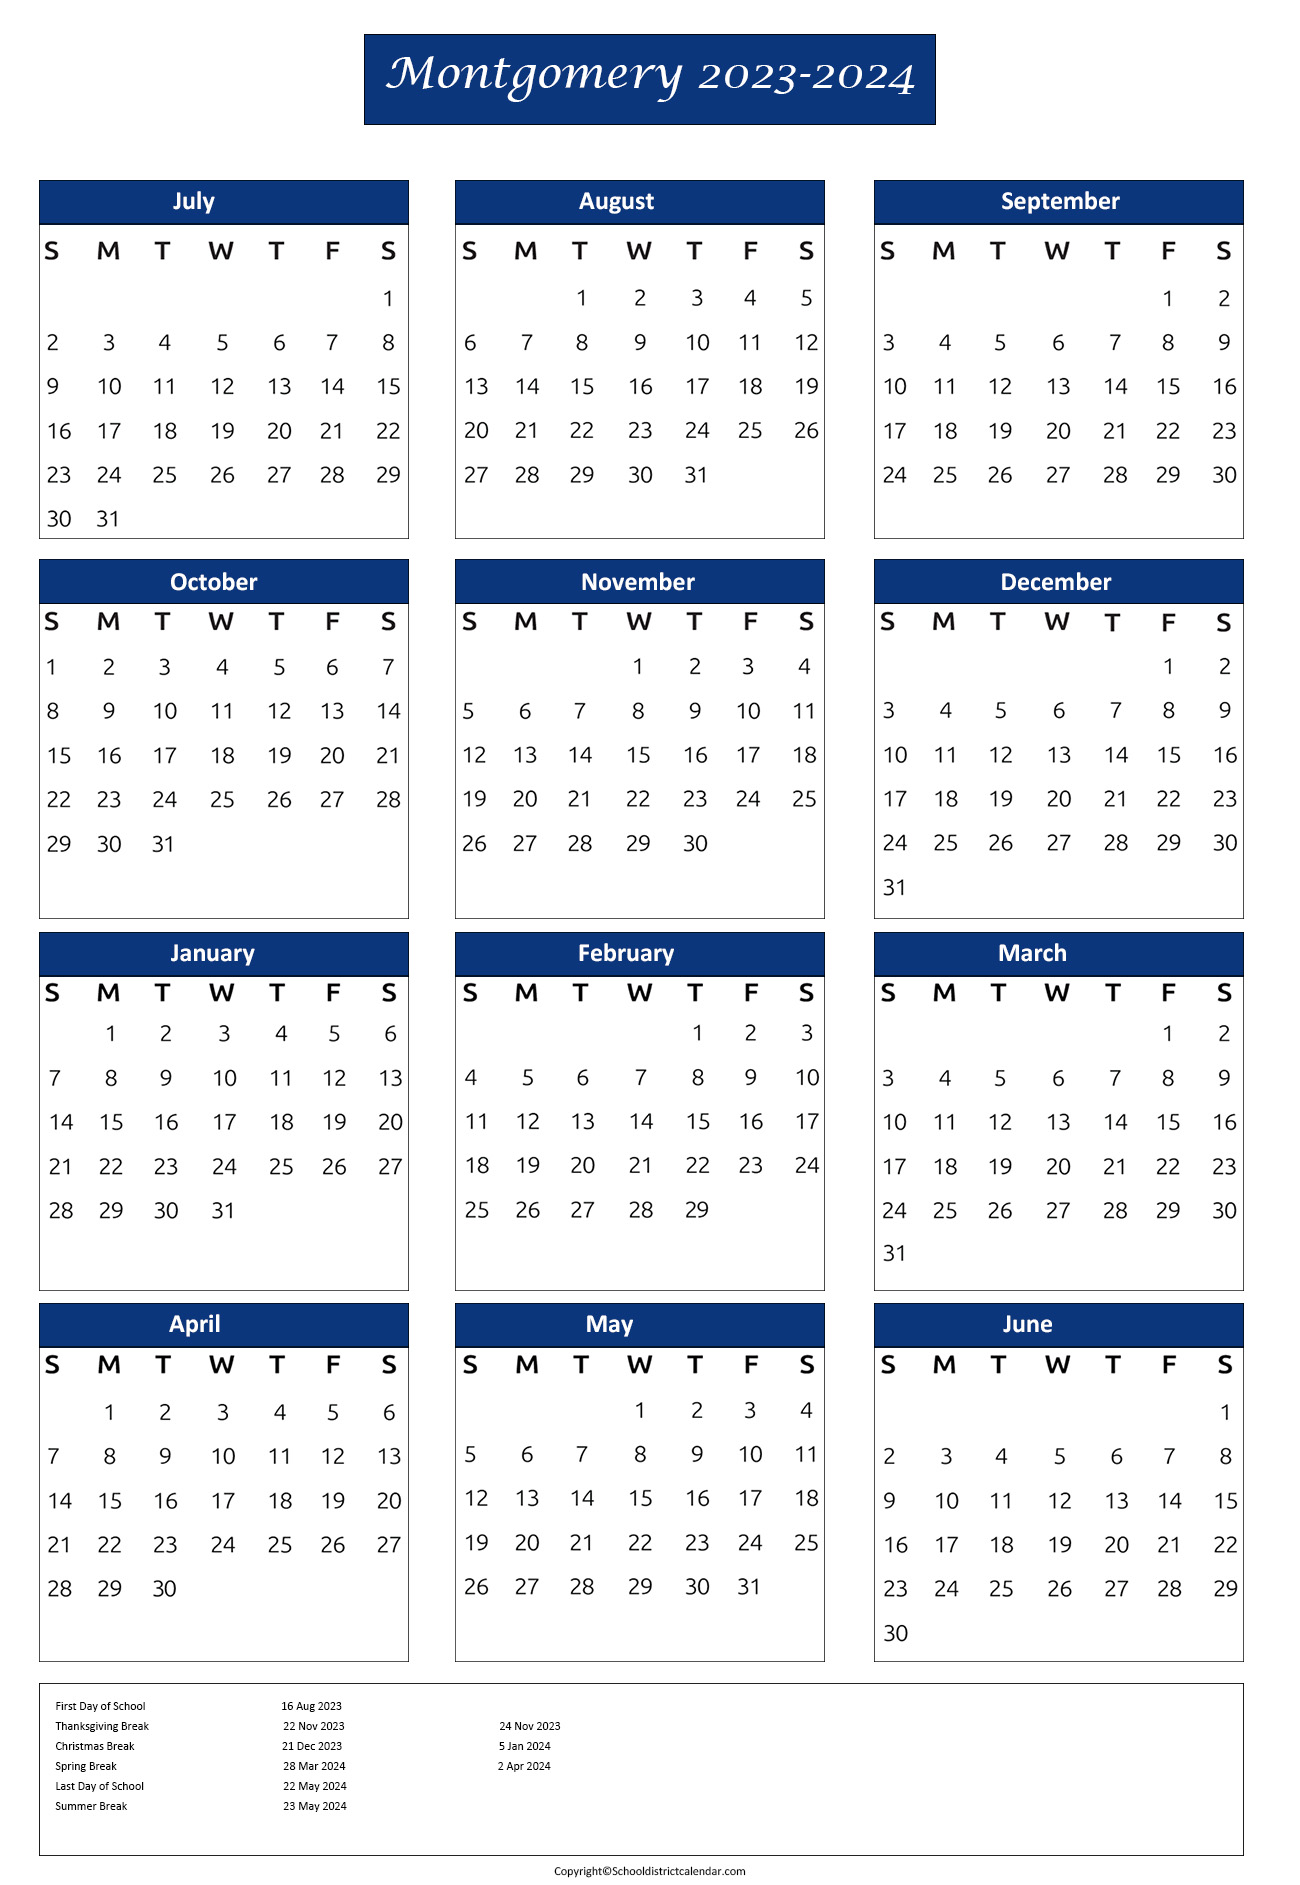 Montgomery County Public Schools Calendar Holidays 2023-2024